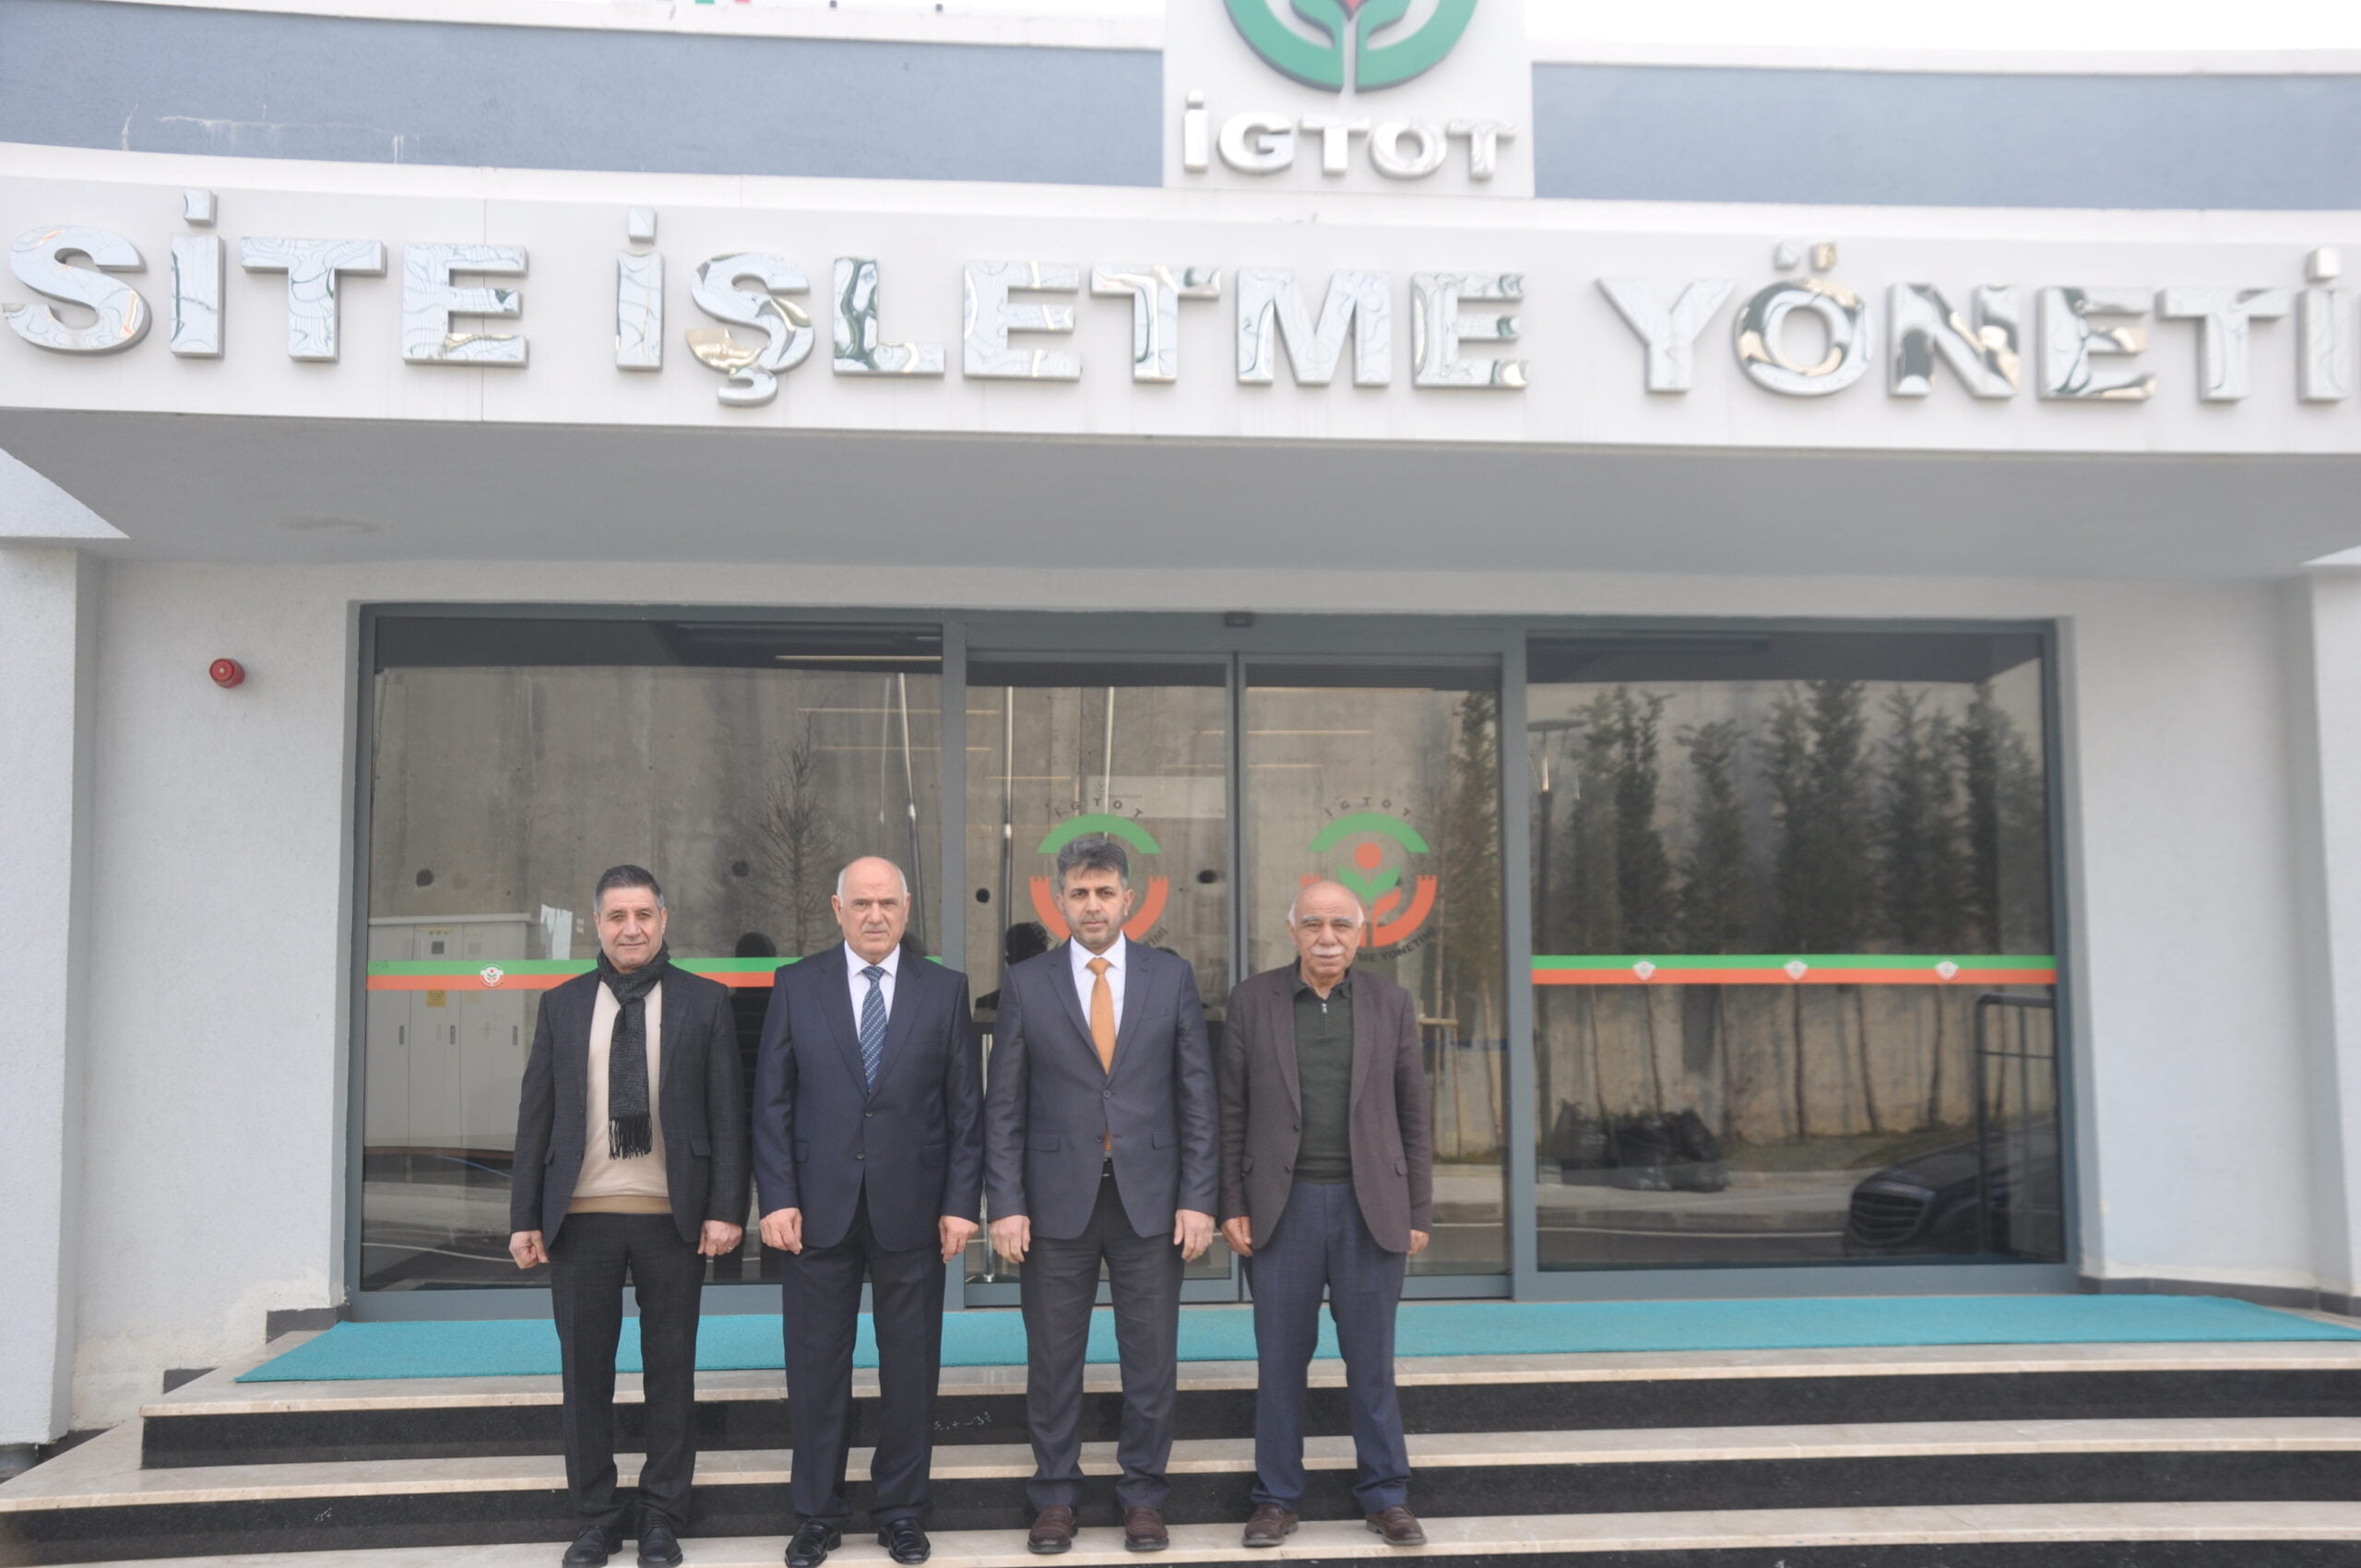 Ak Parti Bağcılar İlçe Başkanlığından İgtot Başkanı Mustafa Karlı’Ya Ziyaret